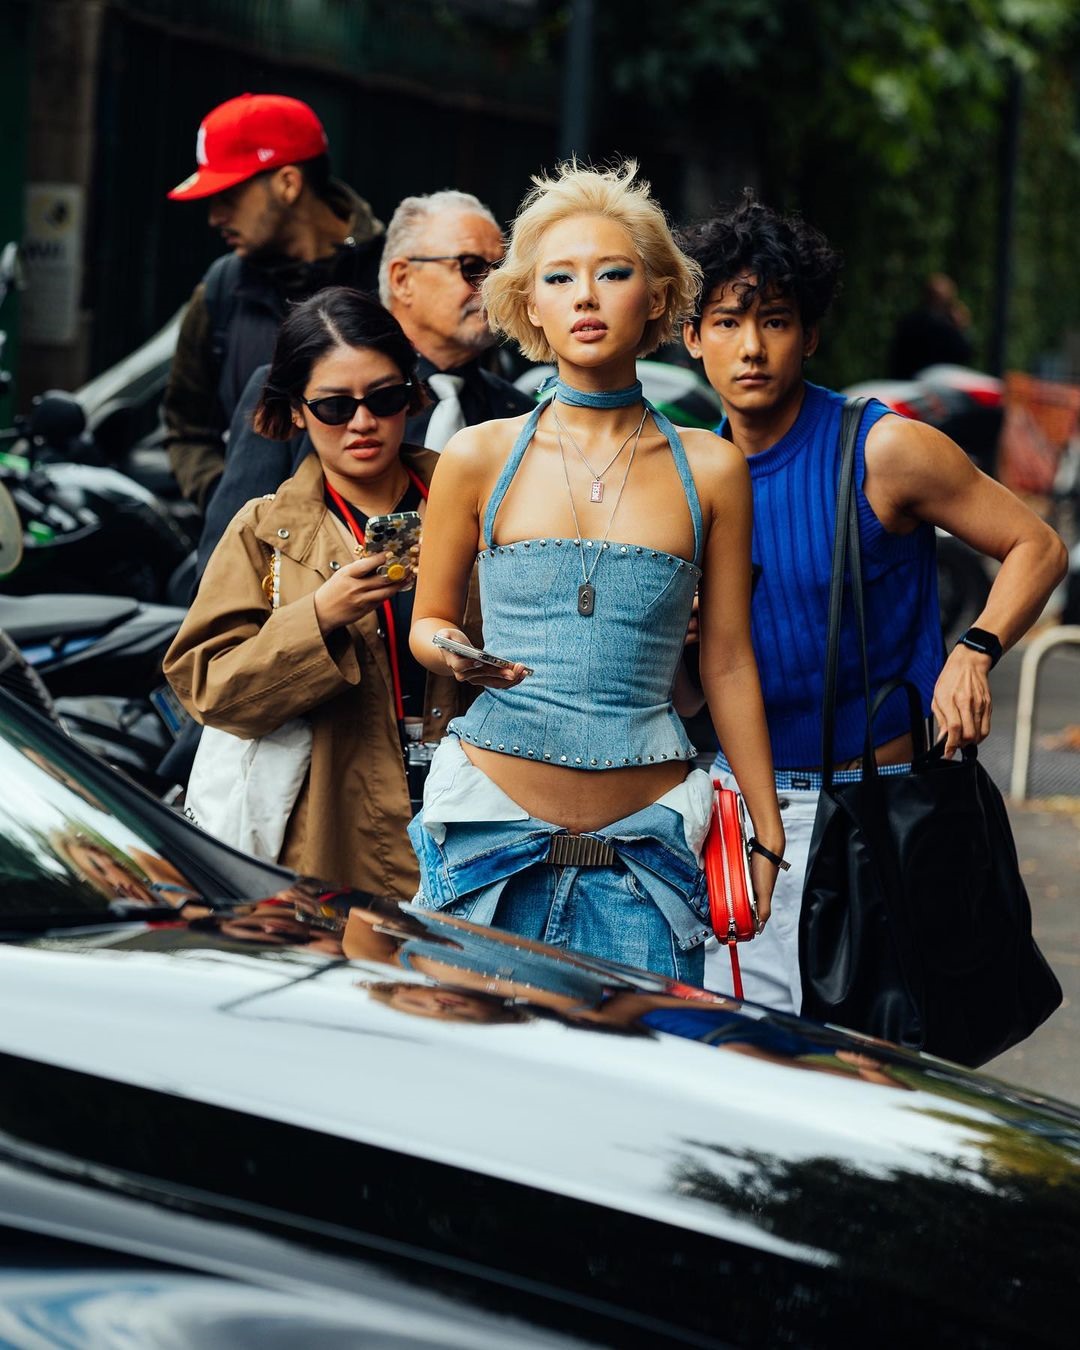 Trong khuôn khổ của Tuần lễ Thời trang Milan năm nay, fashionista Khánh Linh (Cô Em Trendy) là một trong những gương mặt đại diện Việt Nam xuất hiện tại đây. Ngay từ khi công bố thông tin sẽ tham gia “Milan Fashion Week”, nhiều fan của nàng fashionista đã rất hào hứng vào sự xuất hiện của Cô Em Trendy. Ảnh: NSCC.